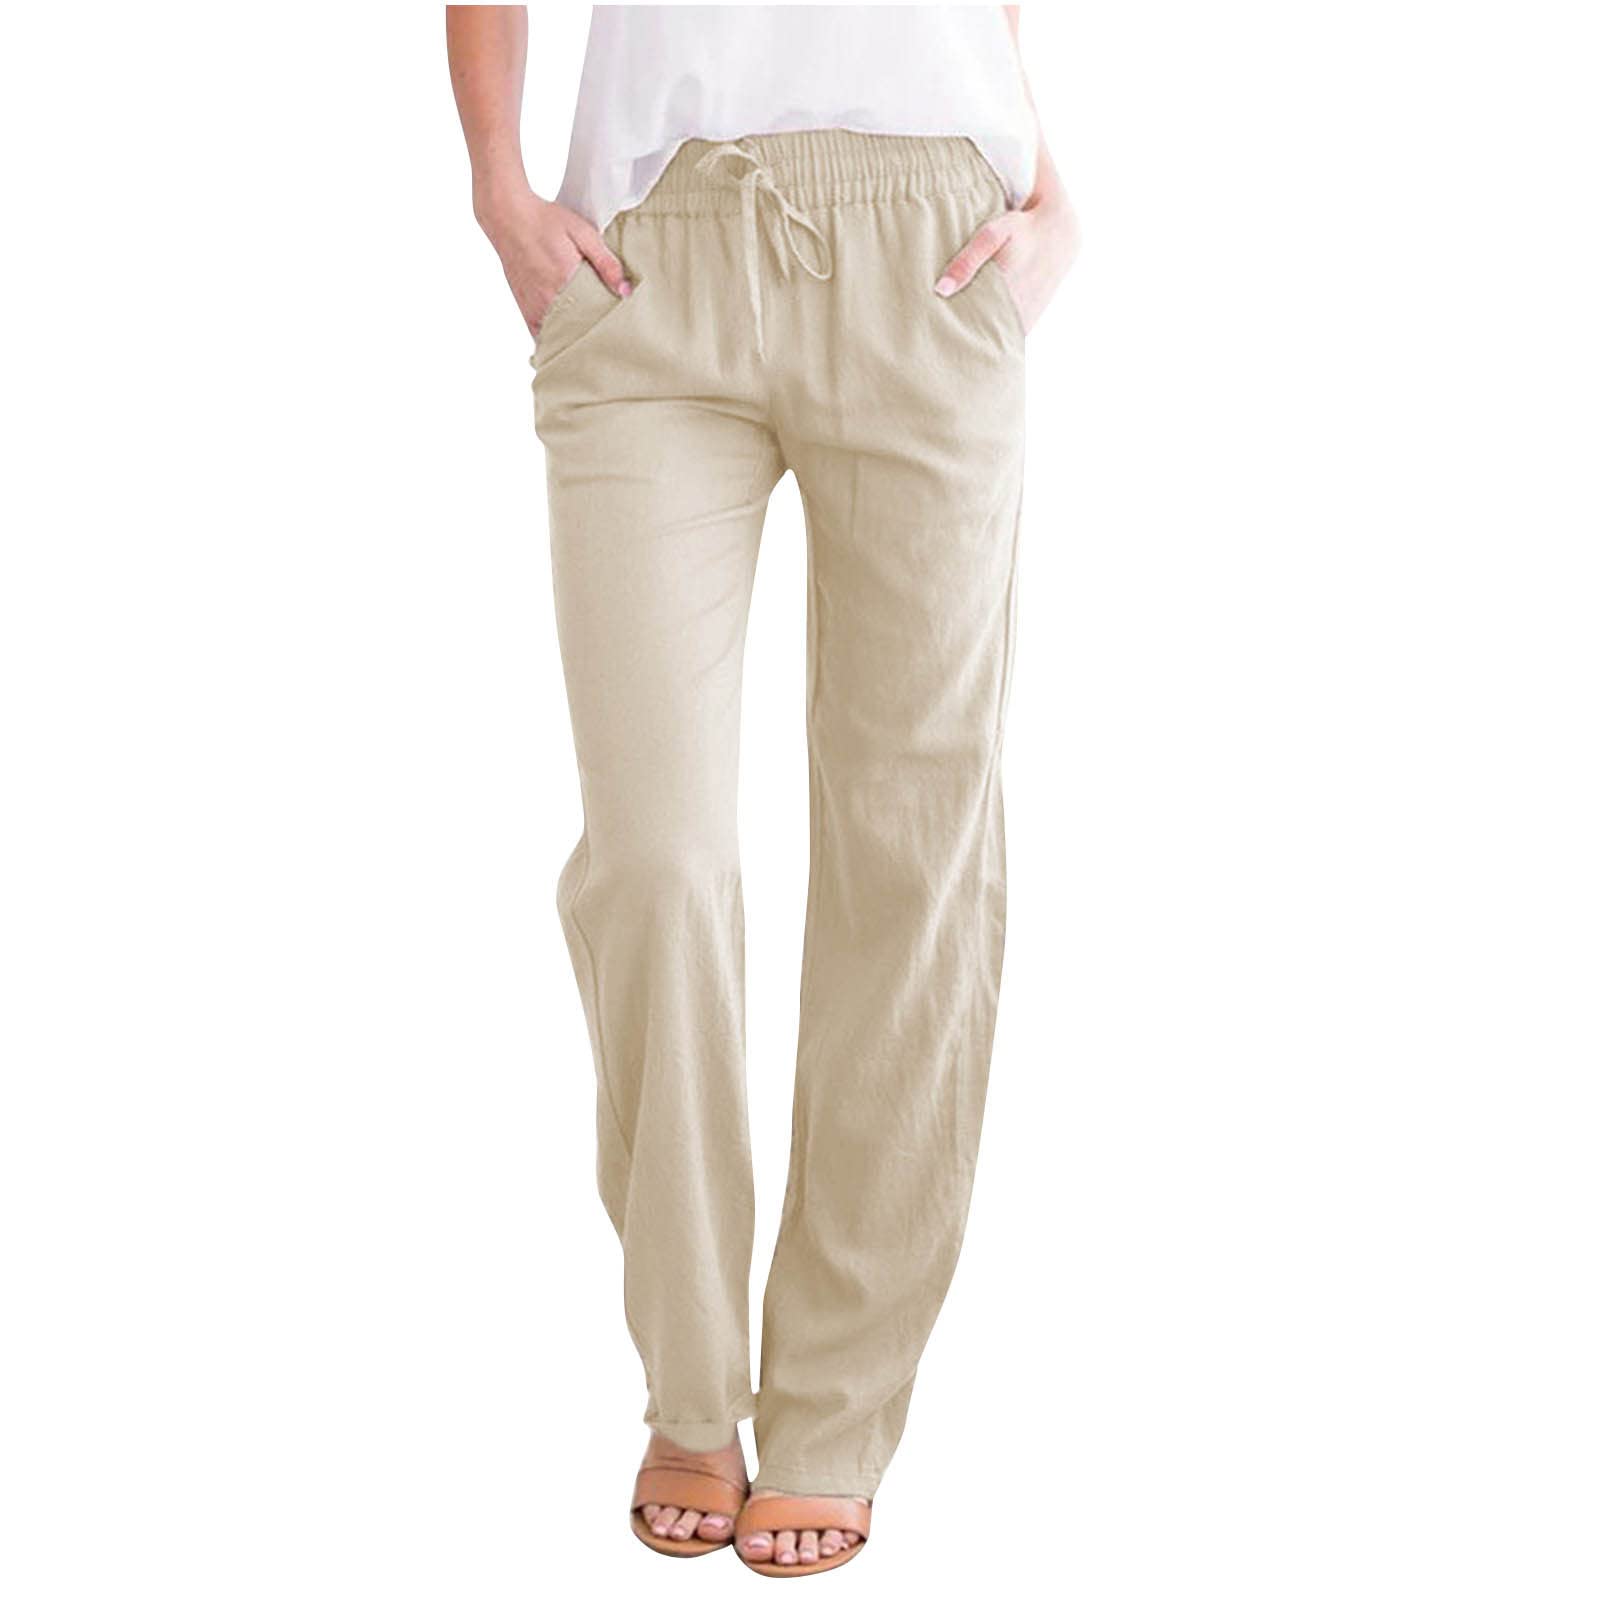 Women's Cotton Linen Pants Summer Light 7/8 Length Pants Casual Solid Color  Beach Pants Leisure Pants Sweatpants with Pockets